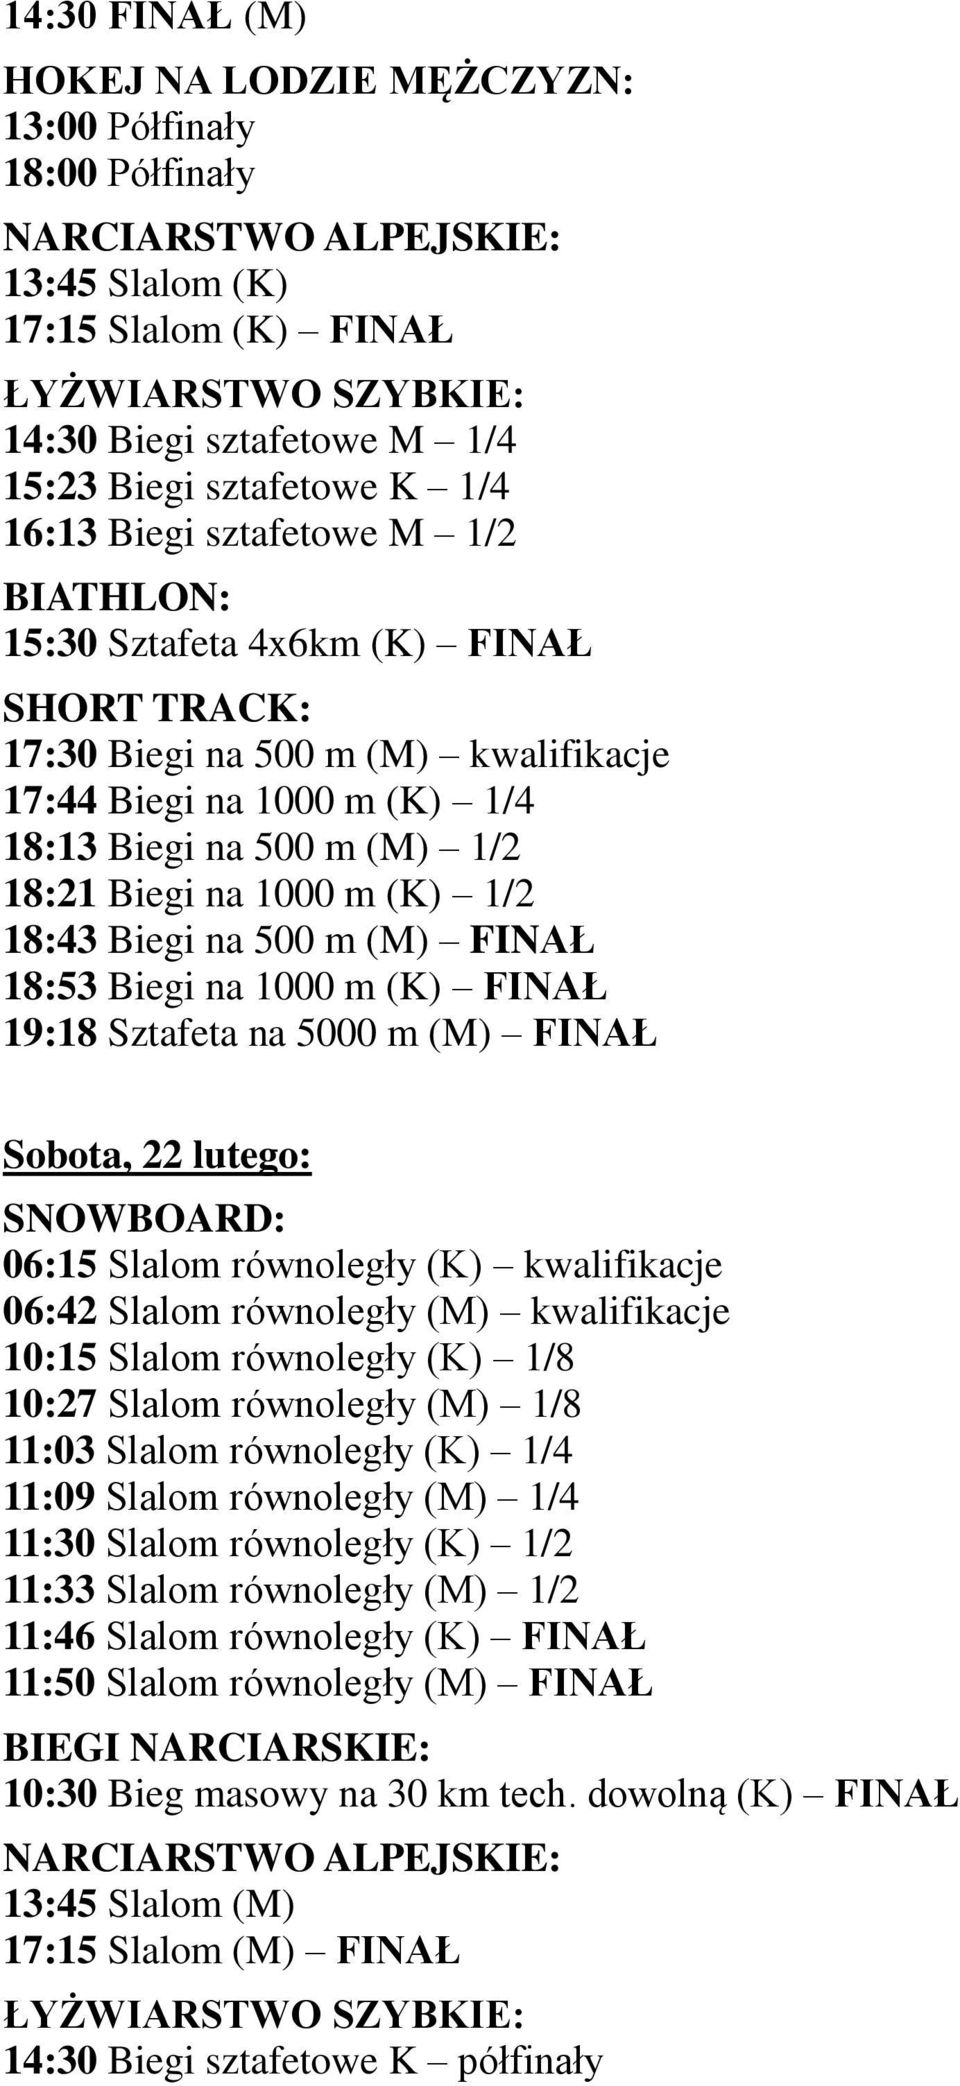 (K) FINAŁ 19:18 Sztafeta na 5000 m (M) FINAŁ Sobota, 22 lutego: SNOWBOARD: 06:15 Slalom równoległy (K) kwalifikacje 06:42 Slalom równoległy (M) kwalifikacje 10:15 Slalom równoległy (K) 1/8 10:27